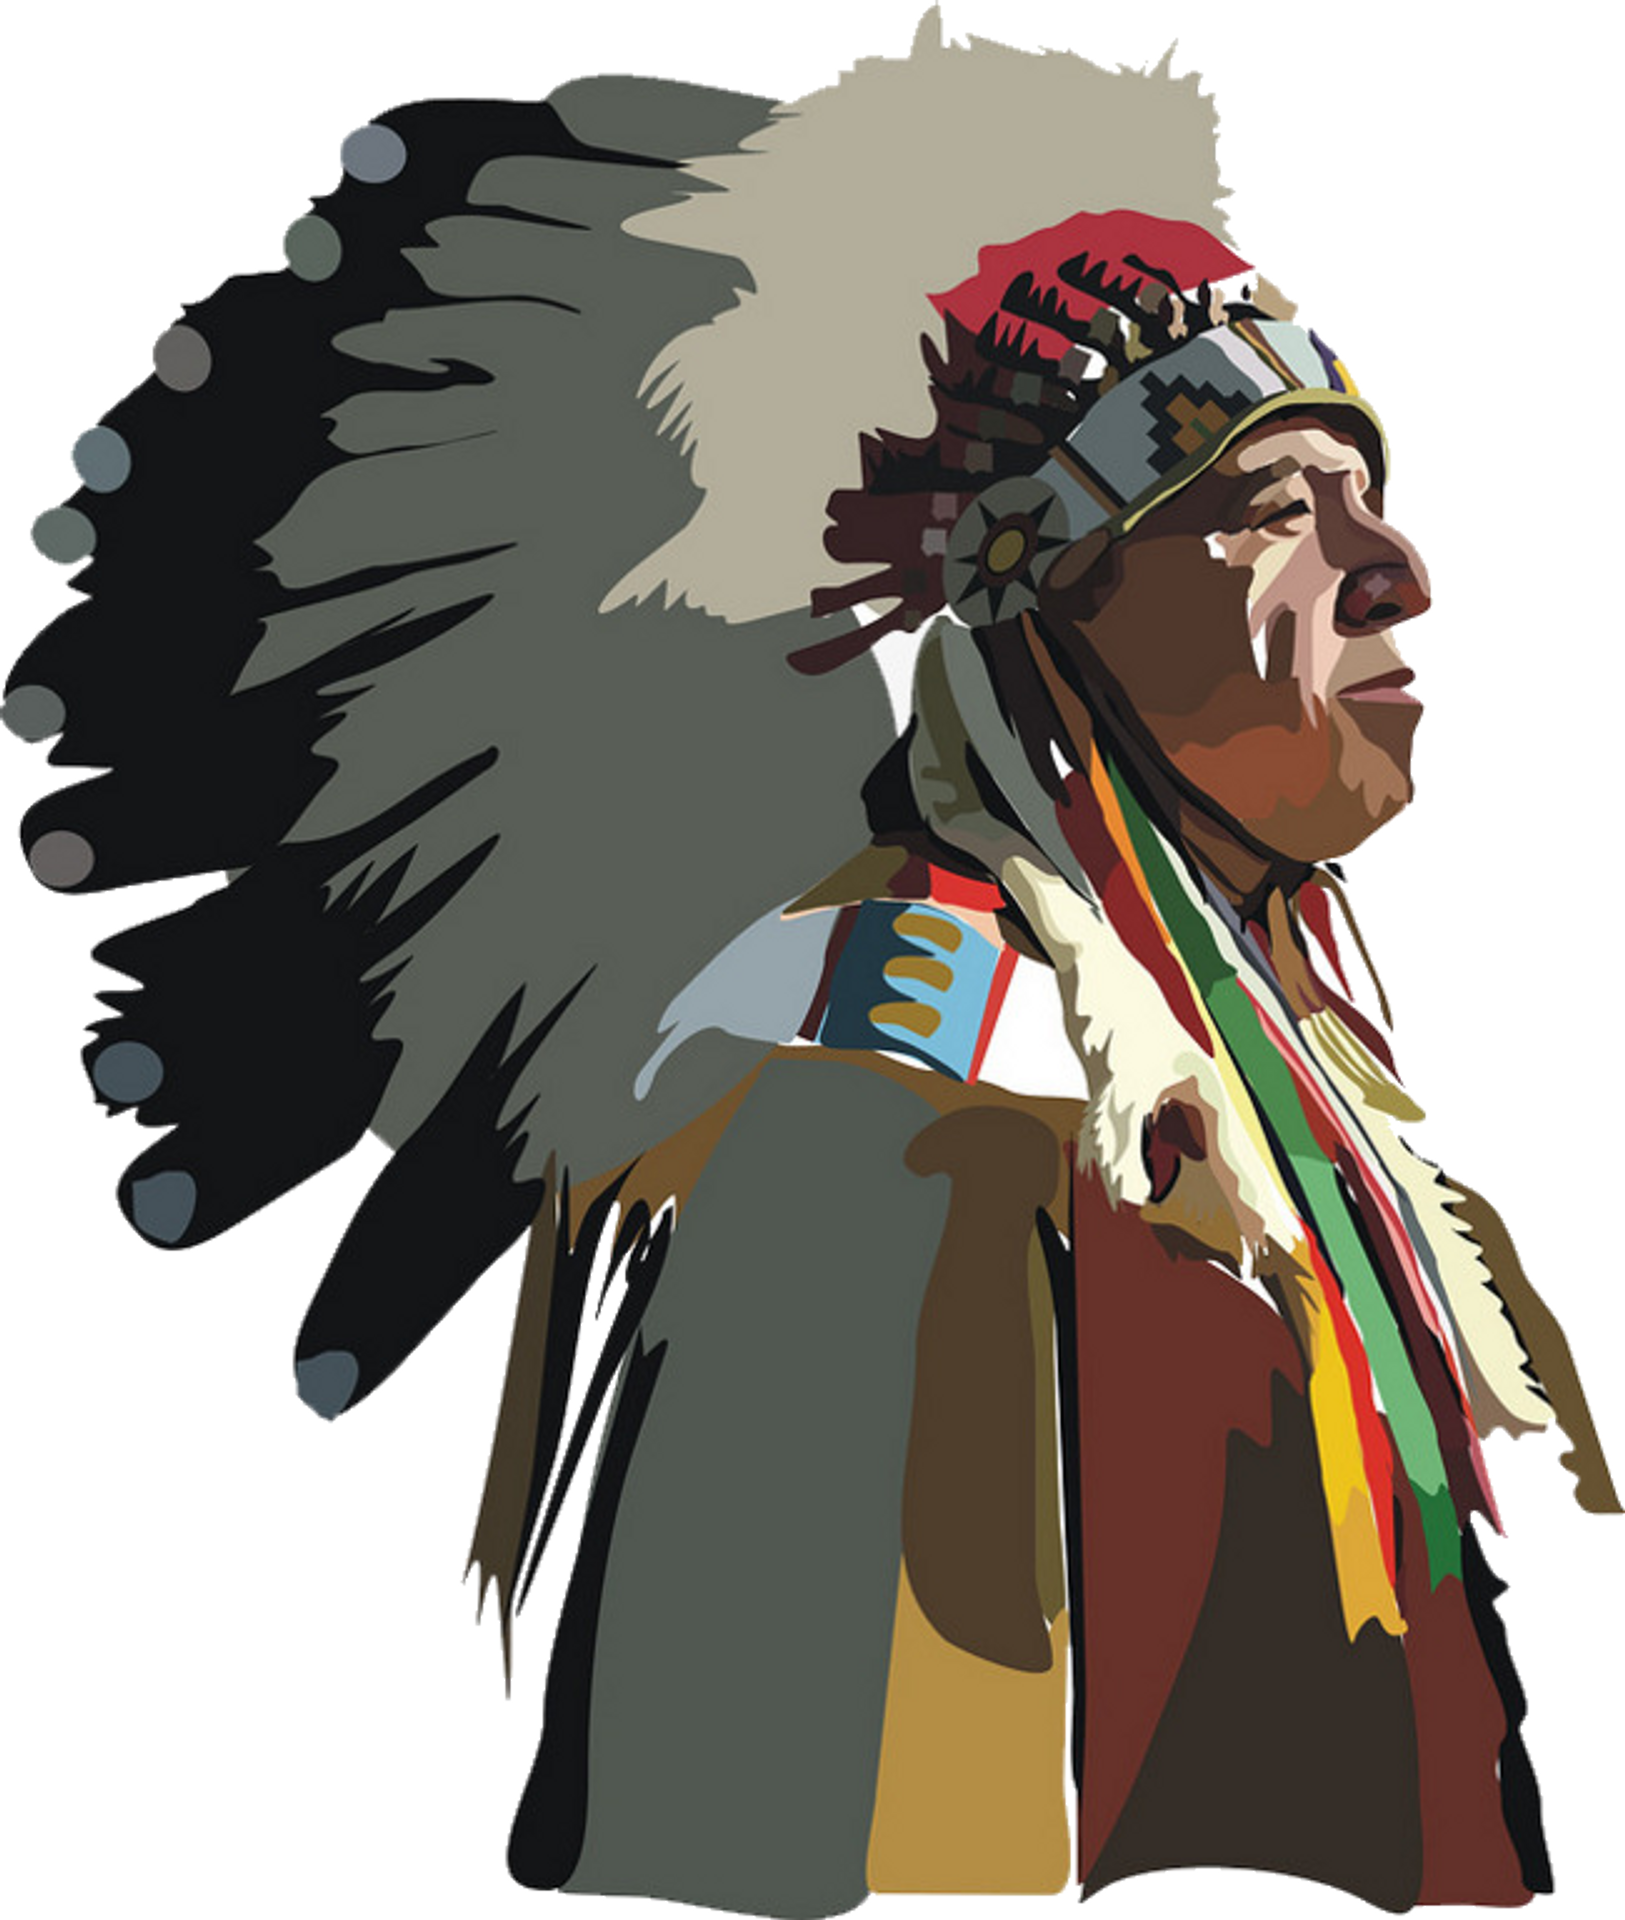 Герои индейцев. Индейцы Апачи вожди. Индейцы Северной Америки Апачи. Вожди индейцев Северной Америки. Шаманы индейцев Северной Америки.